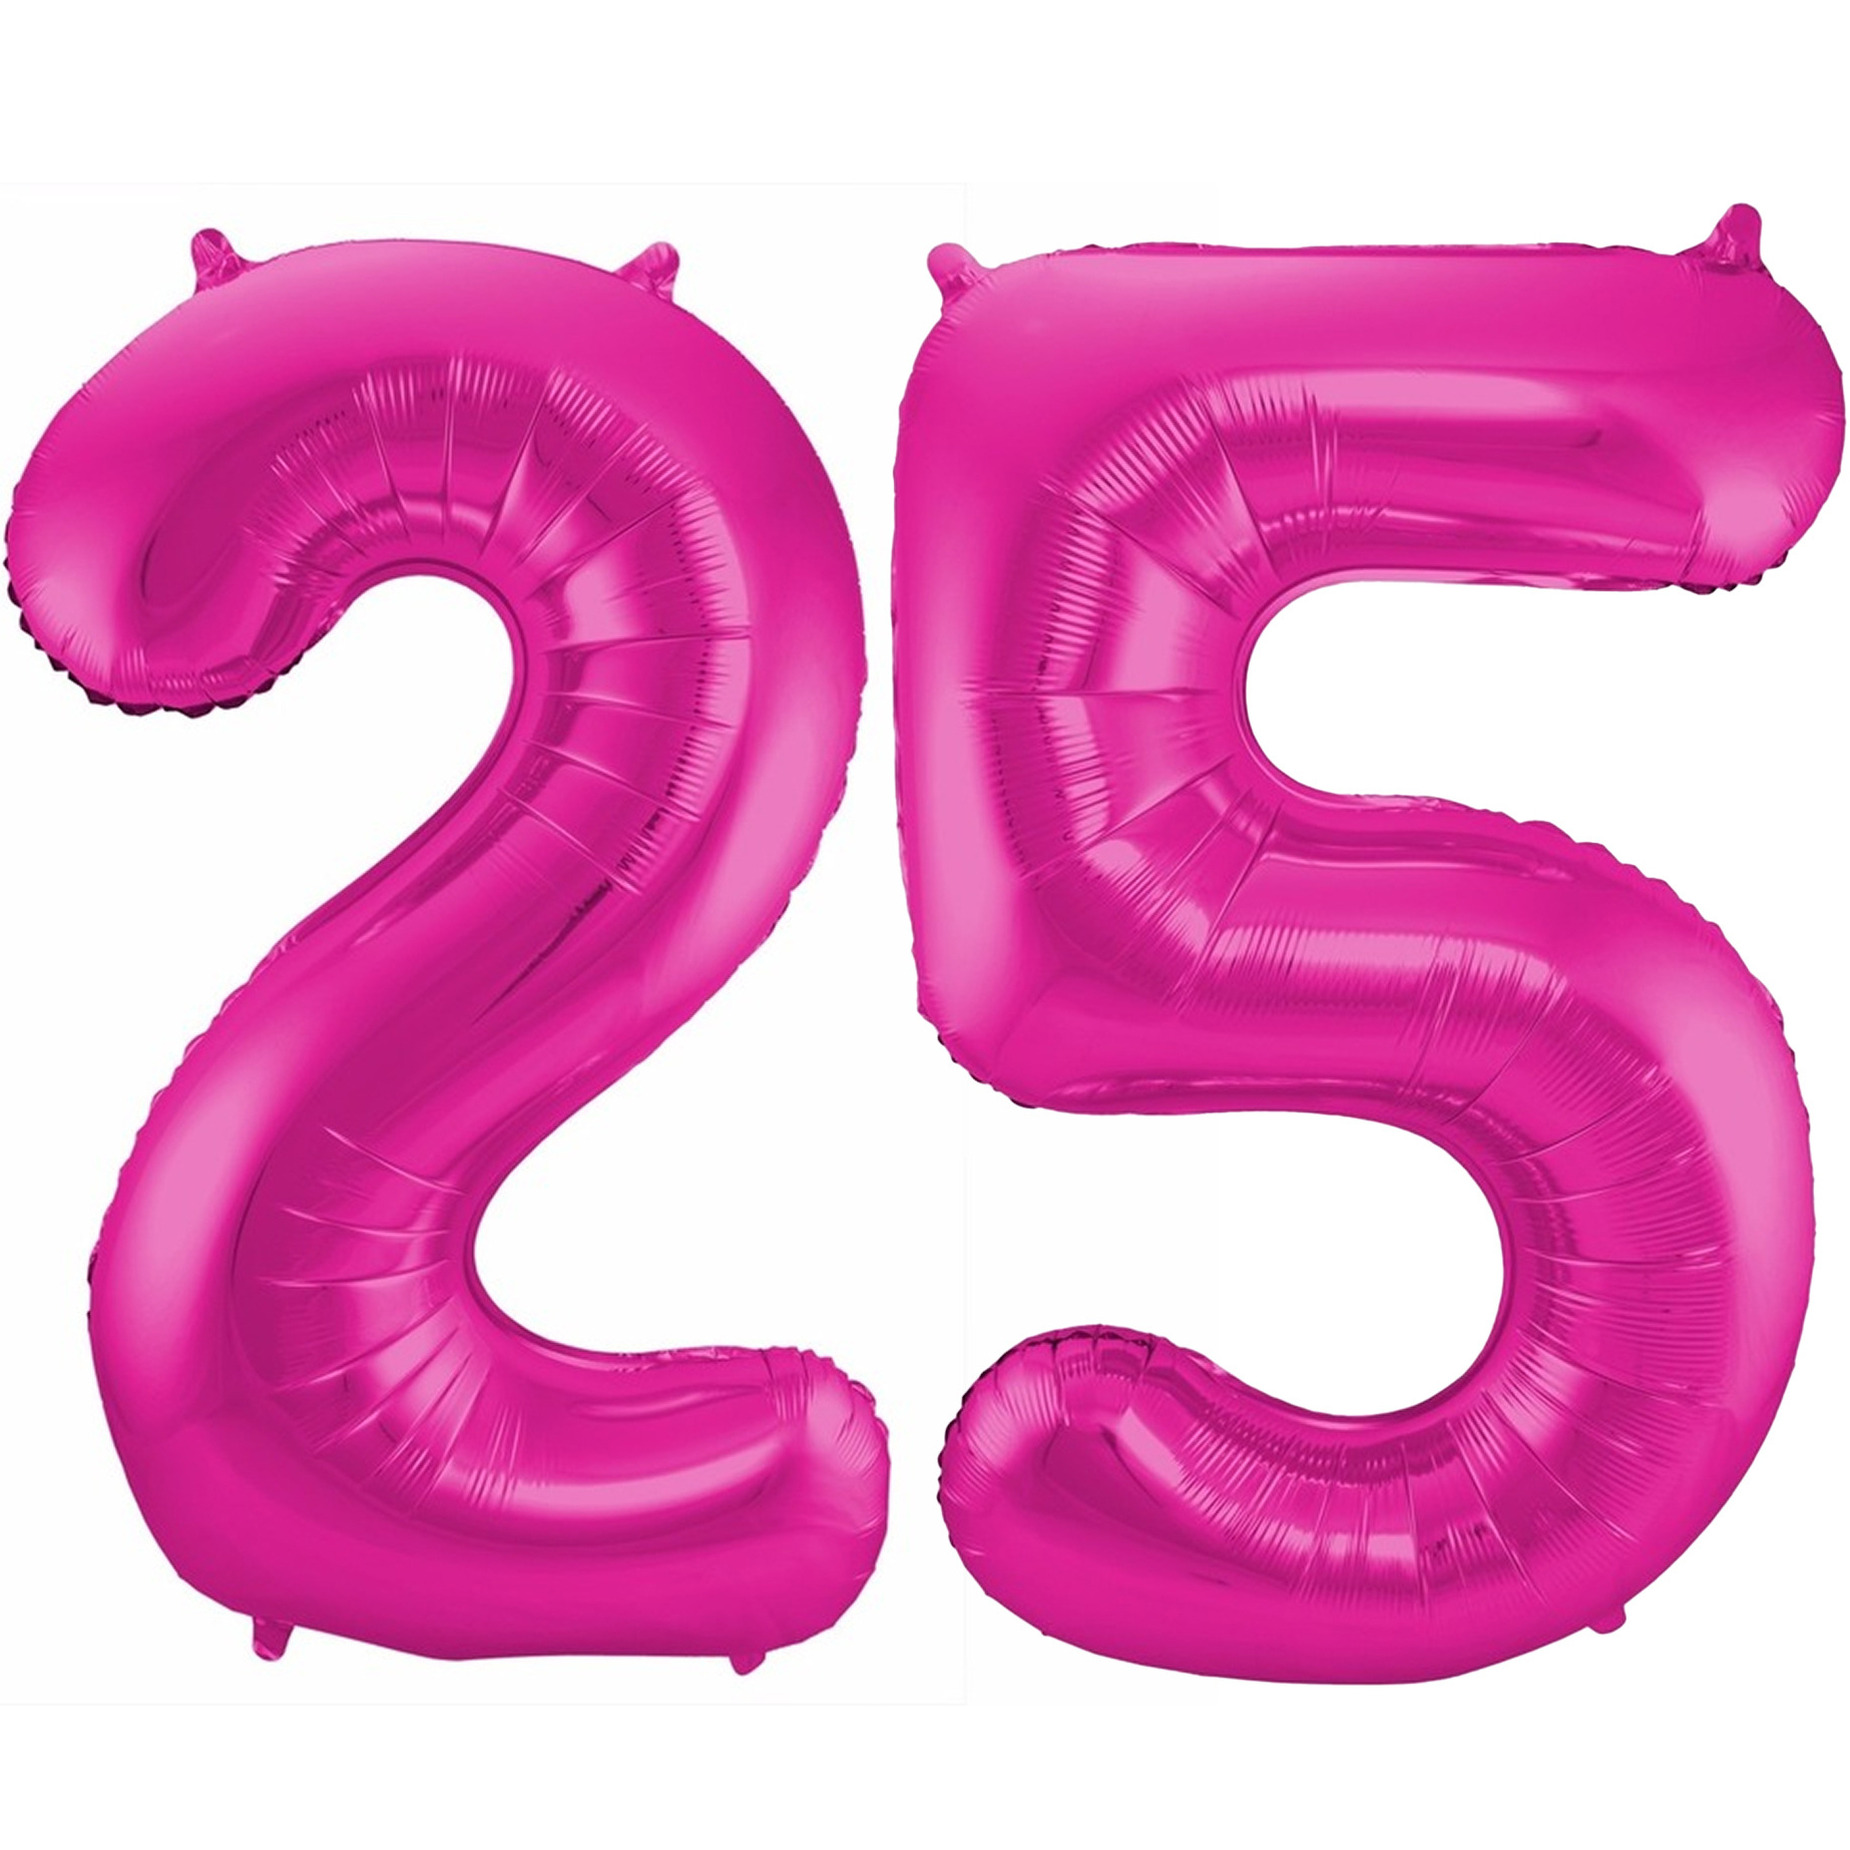 Cijfer ballonnen opblaas Verjaardag versiering 25 jaar 85 cm roze